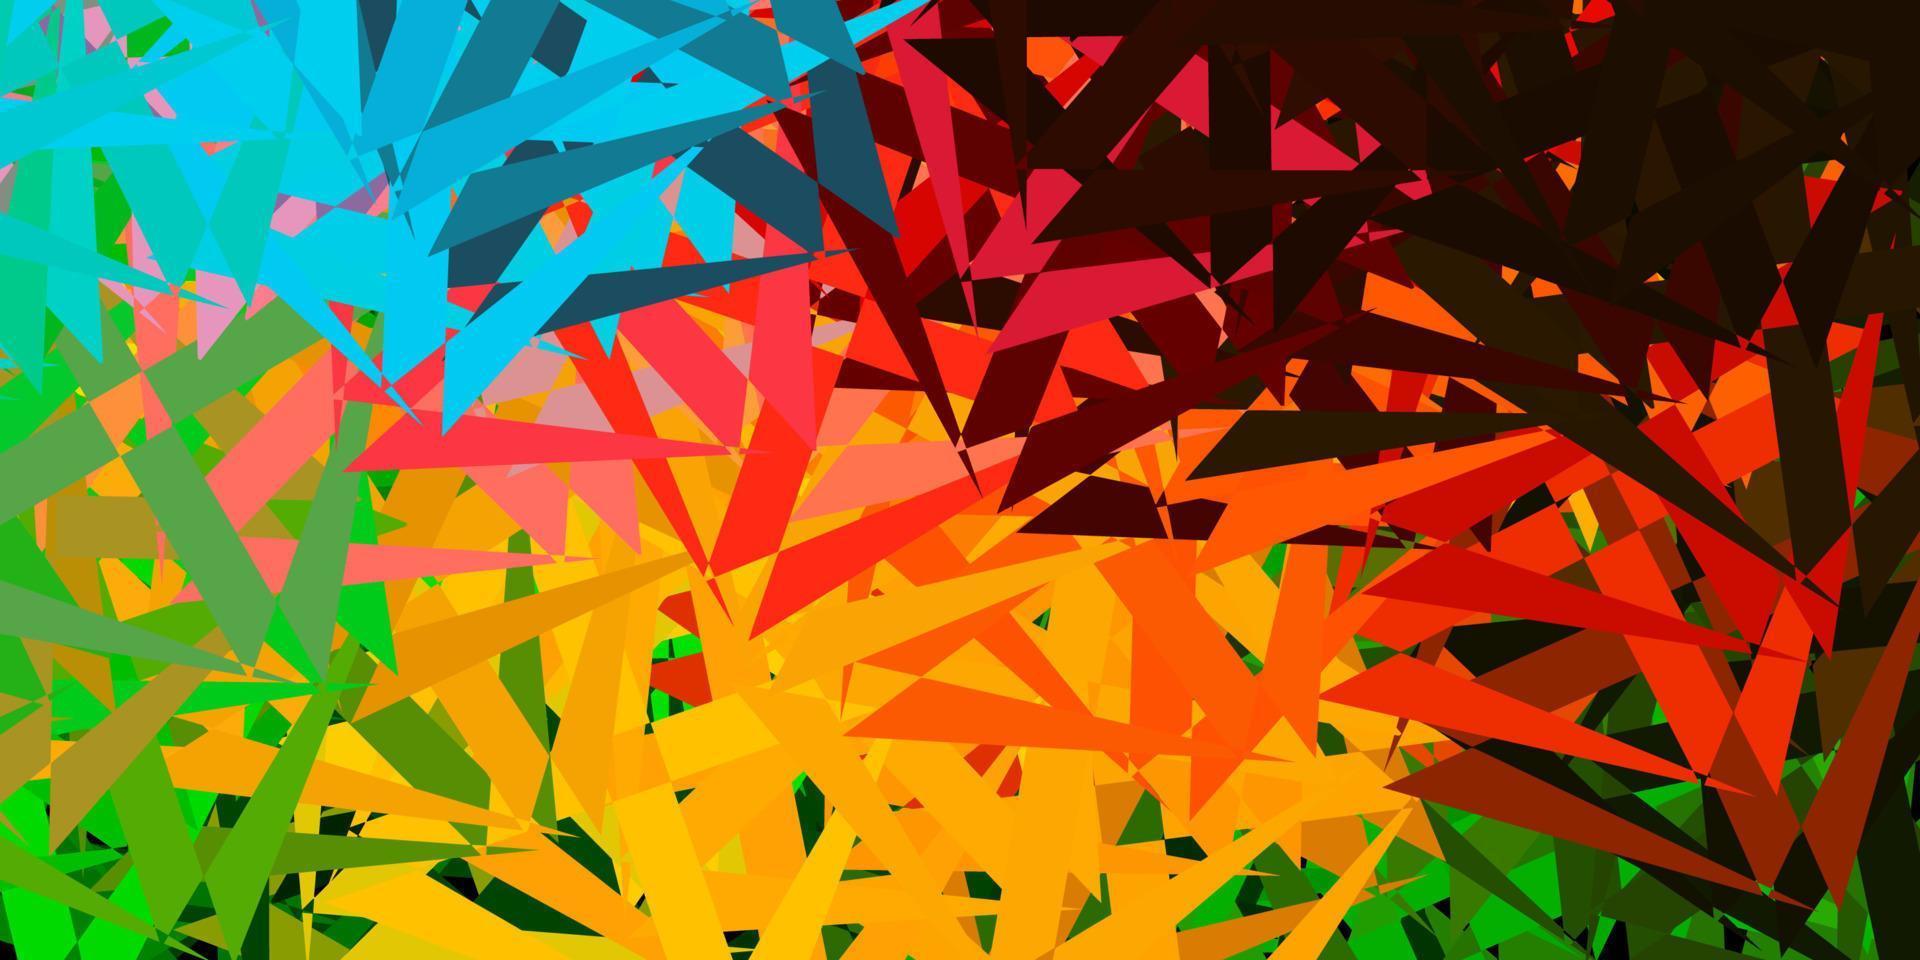 modello vettoriale multicolore chiaro con forme poligonali.